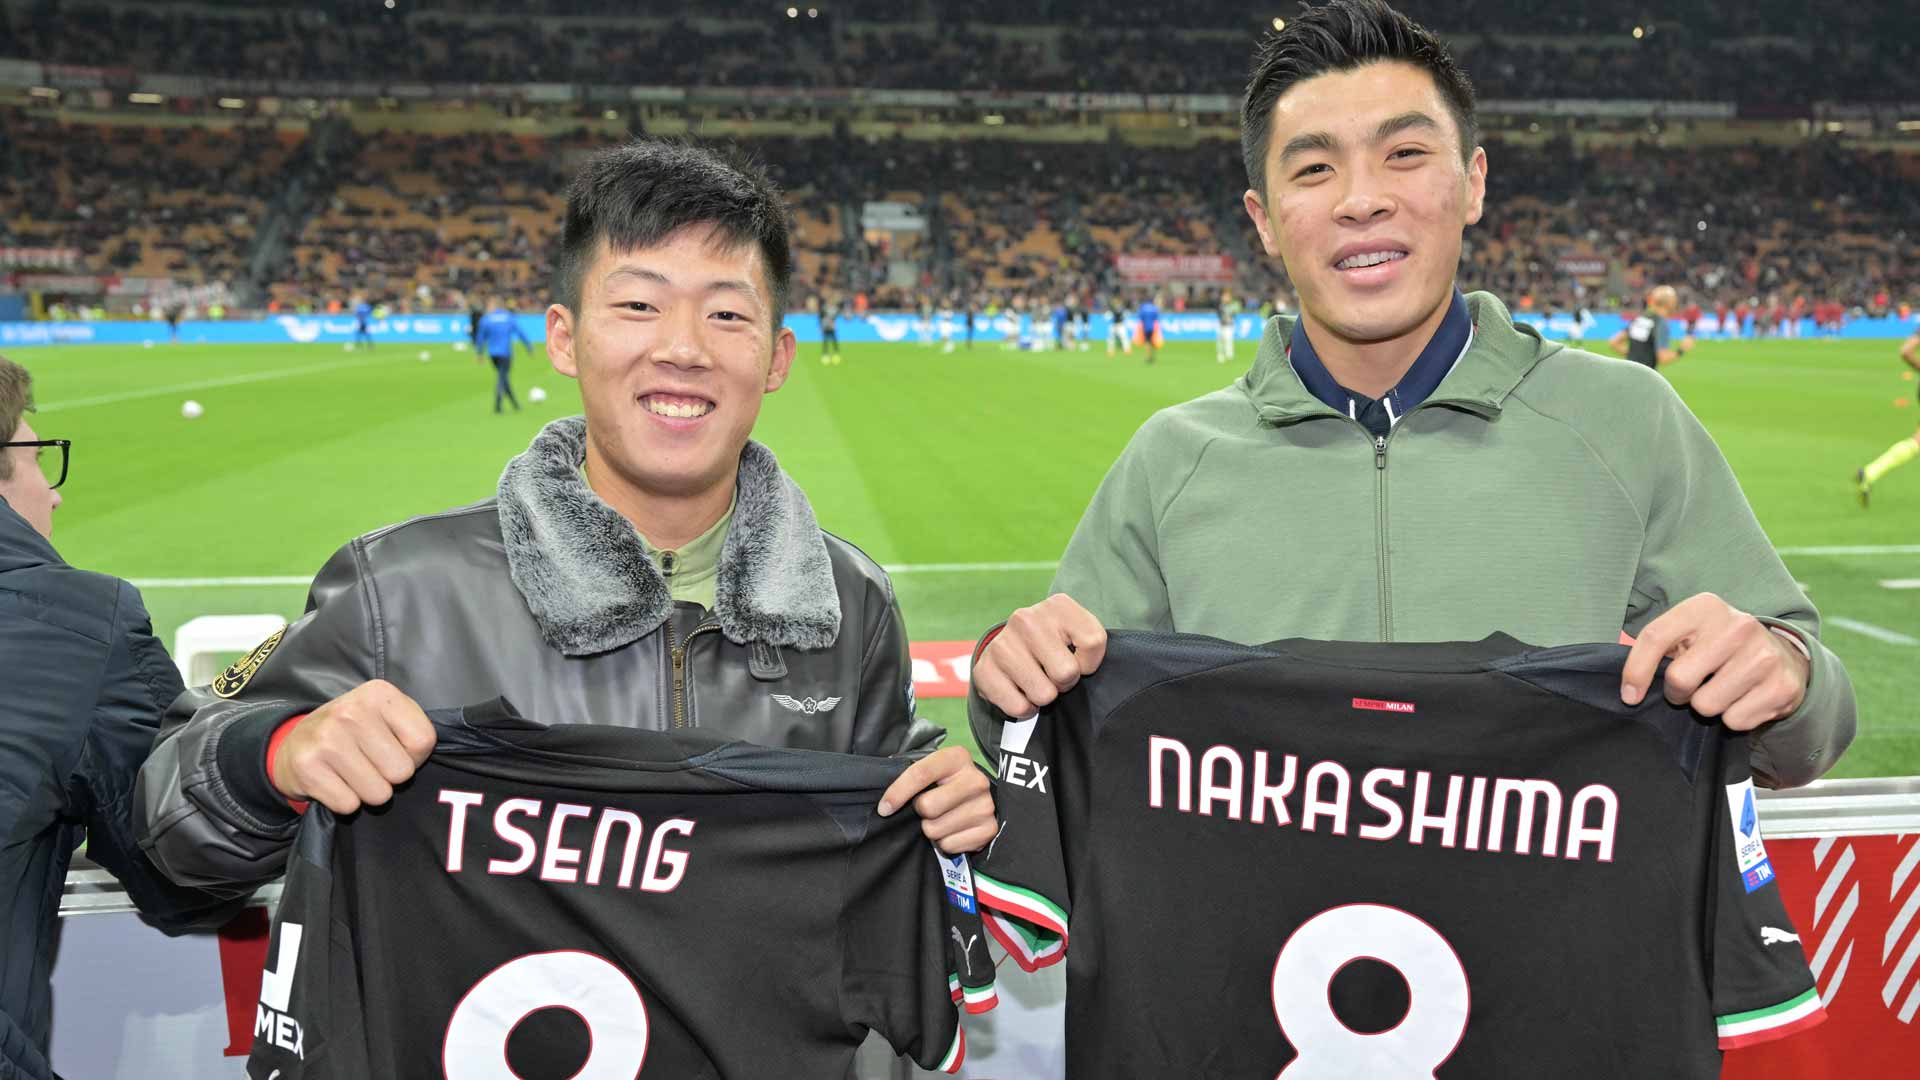 Chun-Hsin Tseng and Brandon Nakashima watch AC Milan play at the San Siro on Saturday.